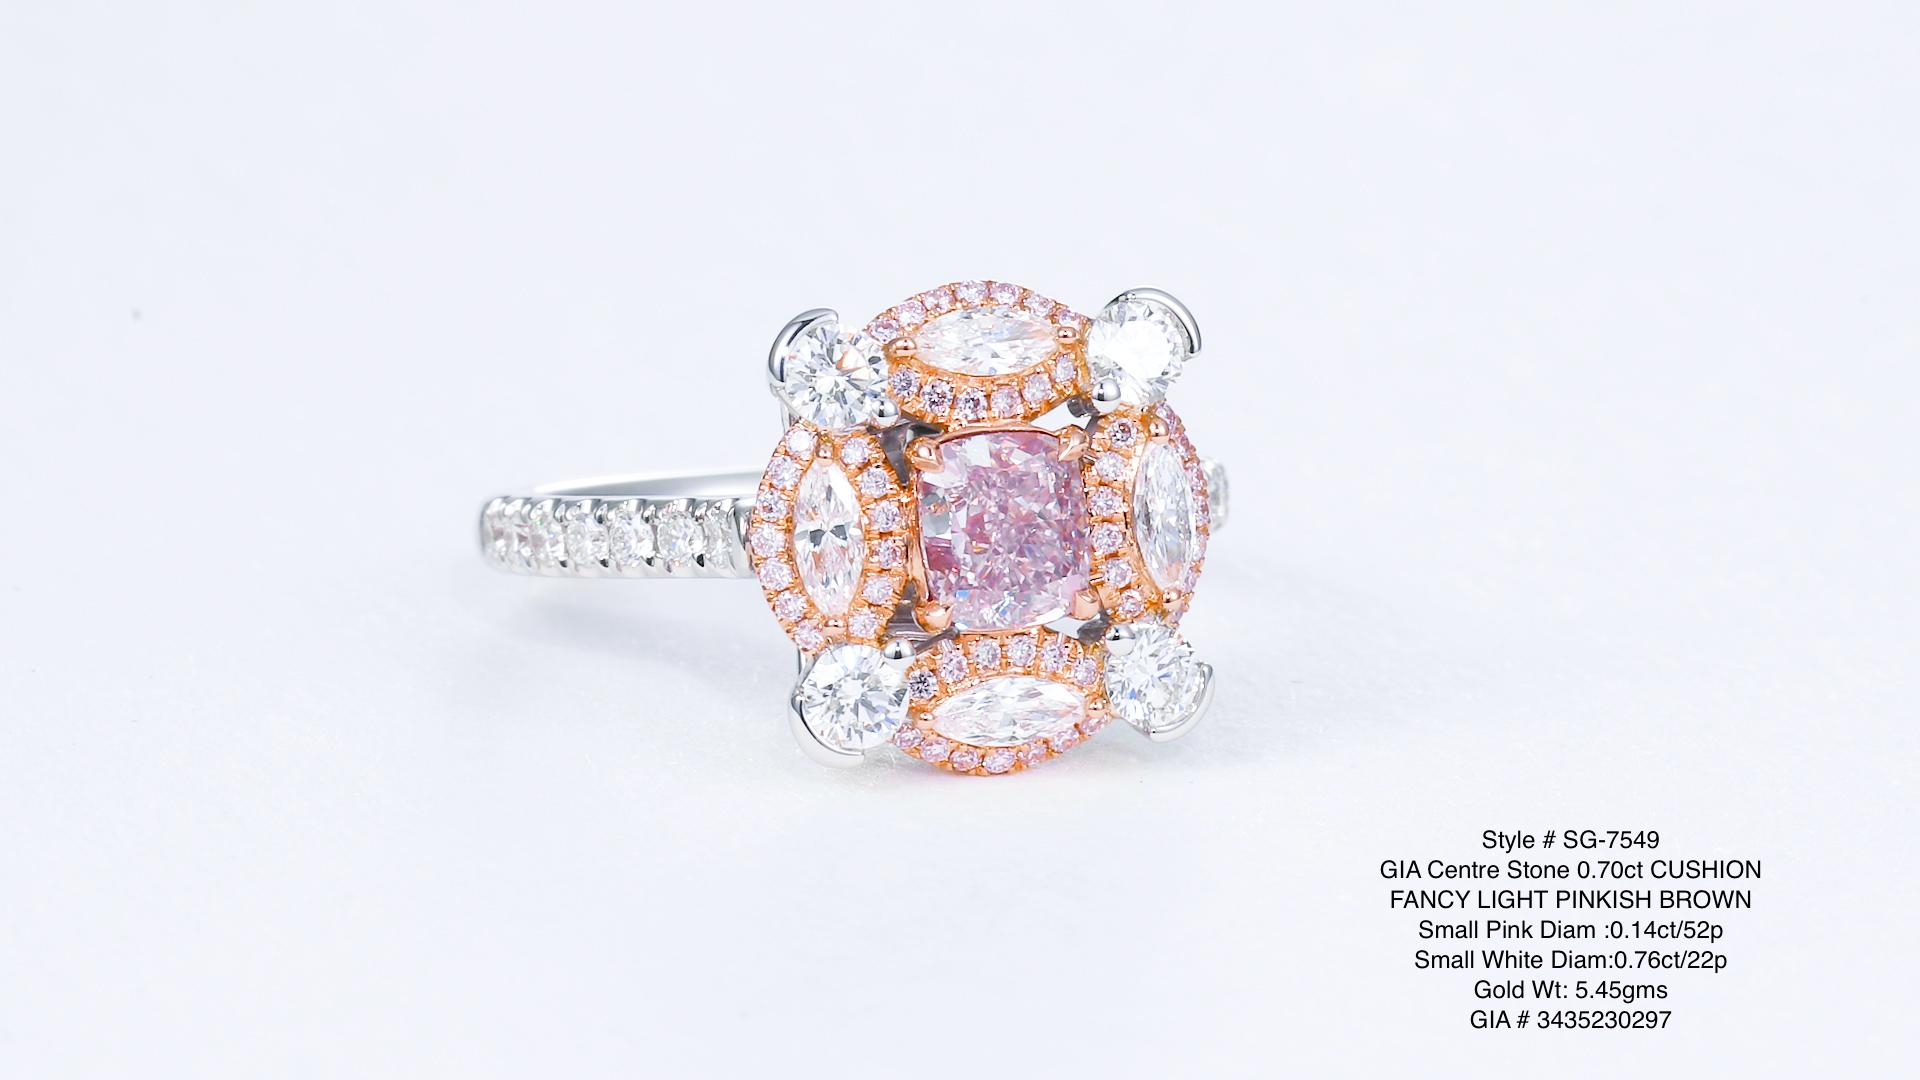 Ein bezaubernder Schatz: ein 0,70-karätiger, natürlicher, rosafarbener Diamant, zart gefasst in einem Ring aus 18-karätigem Gold. Mit bezaubernden weißen und rosafarbenen Diamanten geschmückt, strahlt dieses seltene Schmuckstück Eleganz und Charme